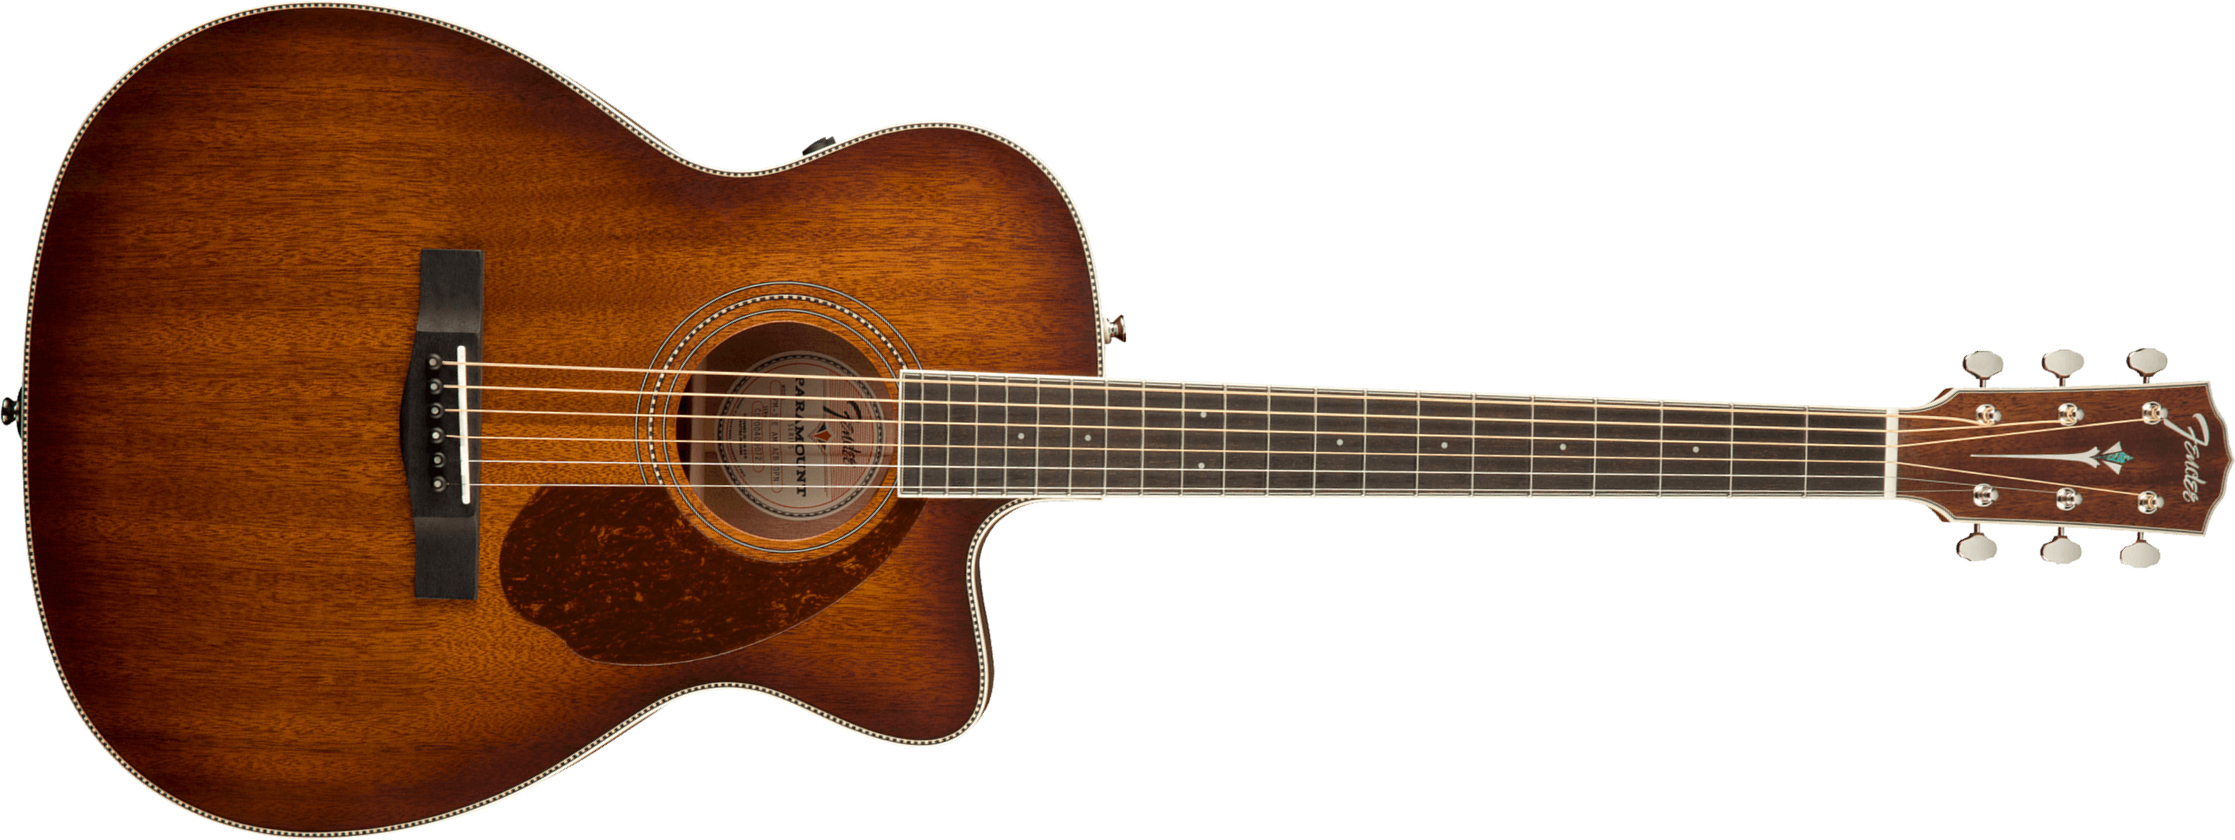 Fender Pm-3ce Triple-0 All-mahogany Paramount 000 Cw Tout Acajou Ova +etui - Aged Cognac Burst - Electro acoustic guitar - Main picture